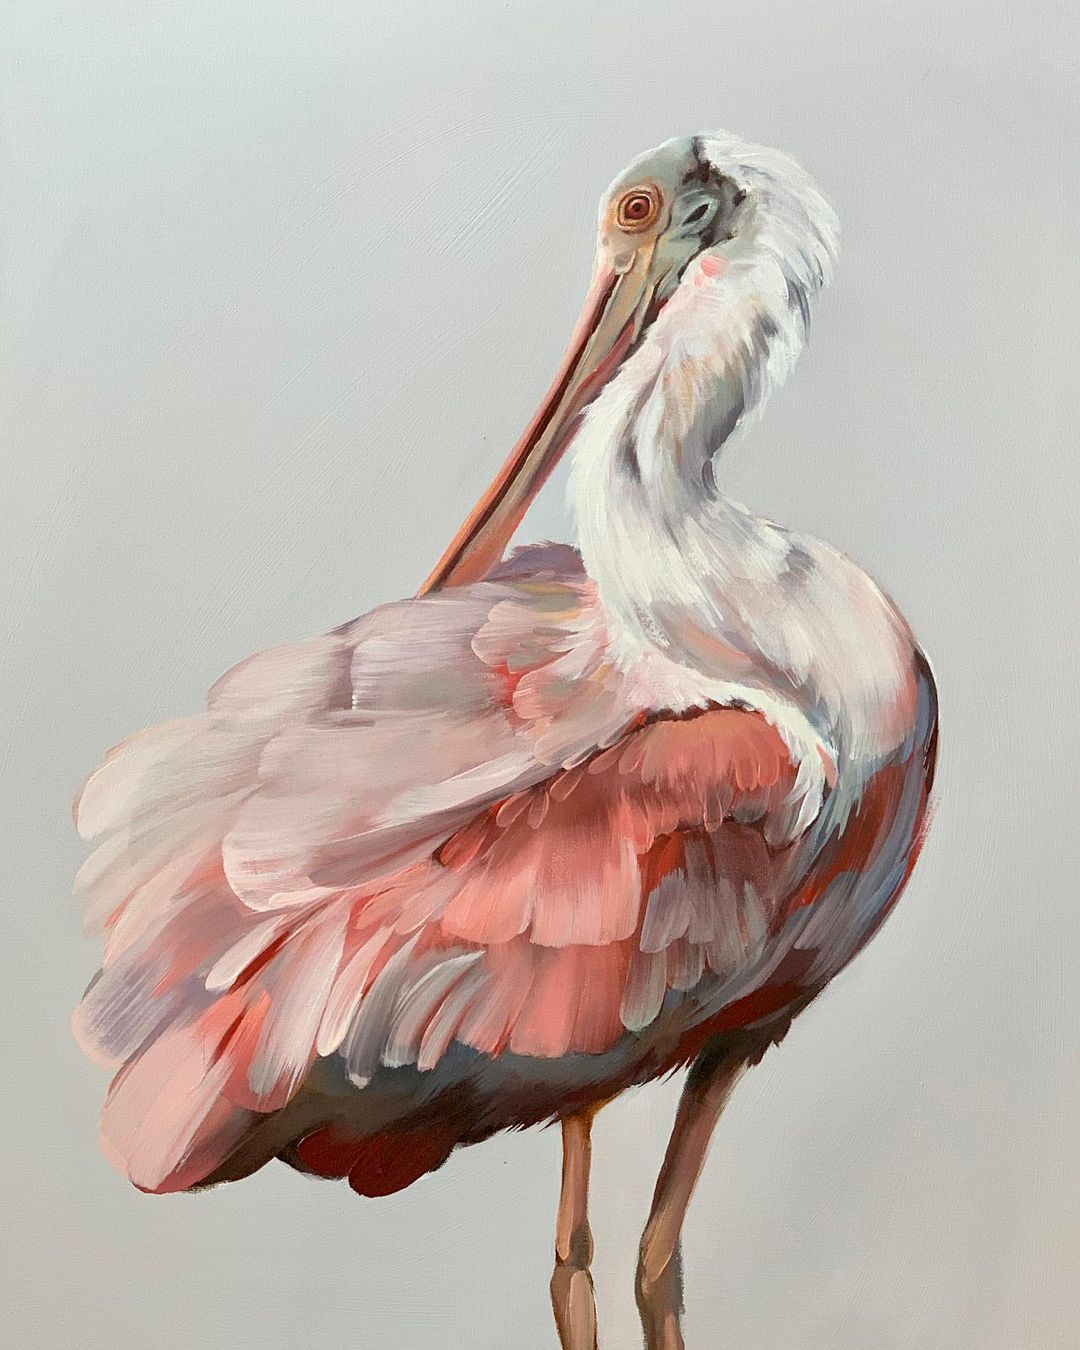 The Exquisite Bird Portrait Paintings Of Rachel Altschuler (24)